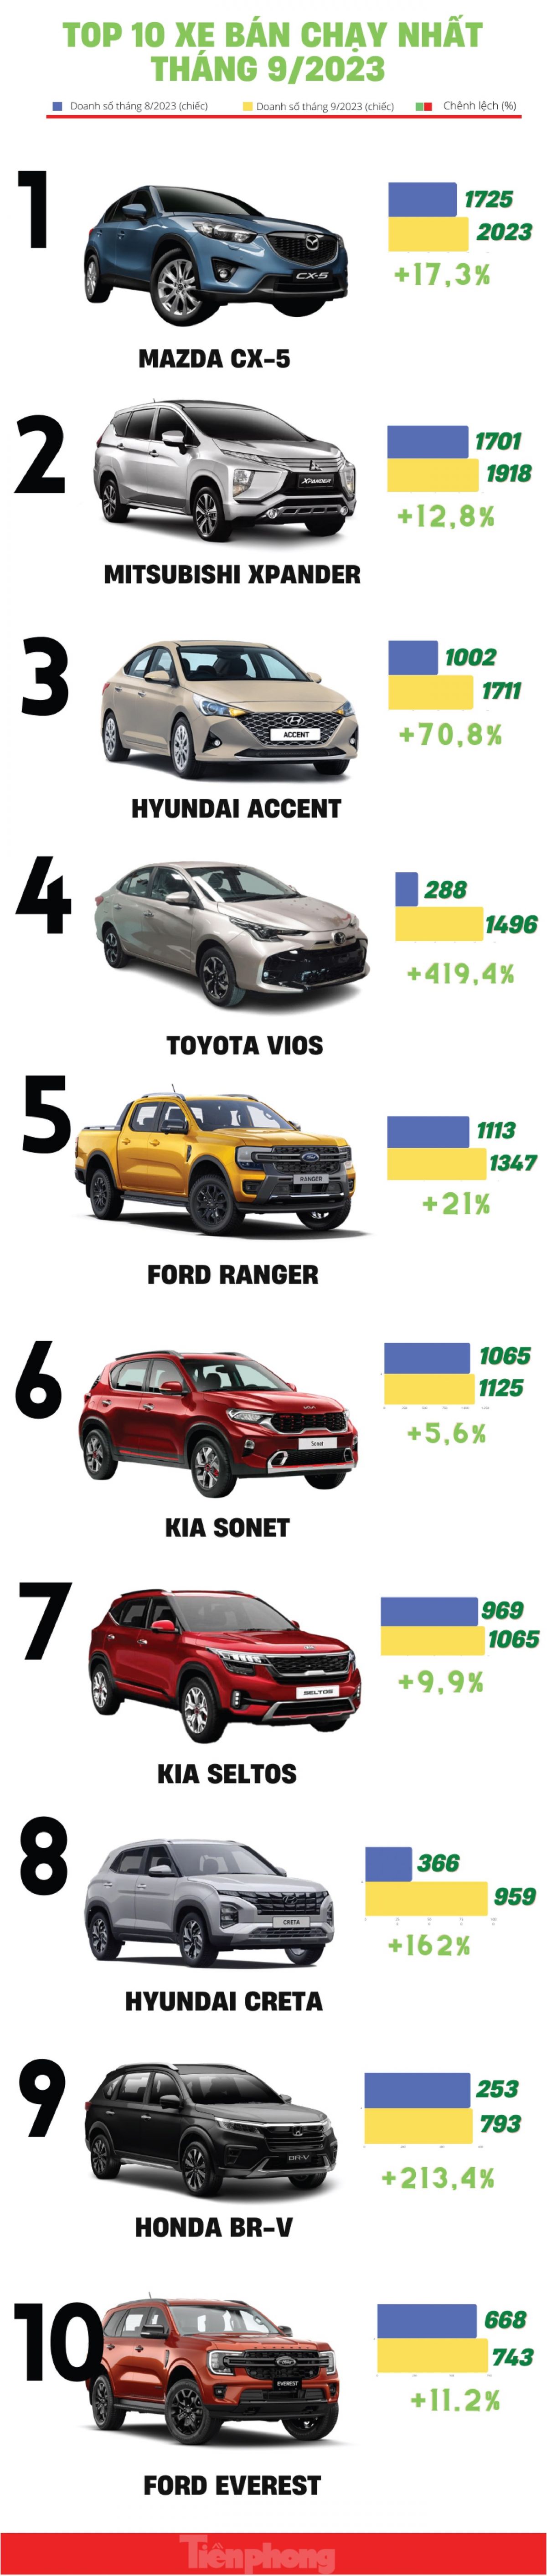 Top 10 ô tô bán chạy nhất tháng 9 tại Việt Nam ảnh 1